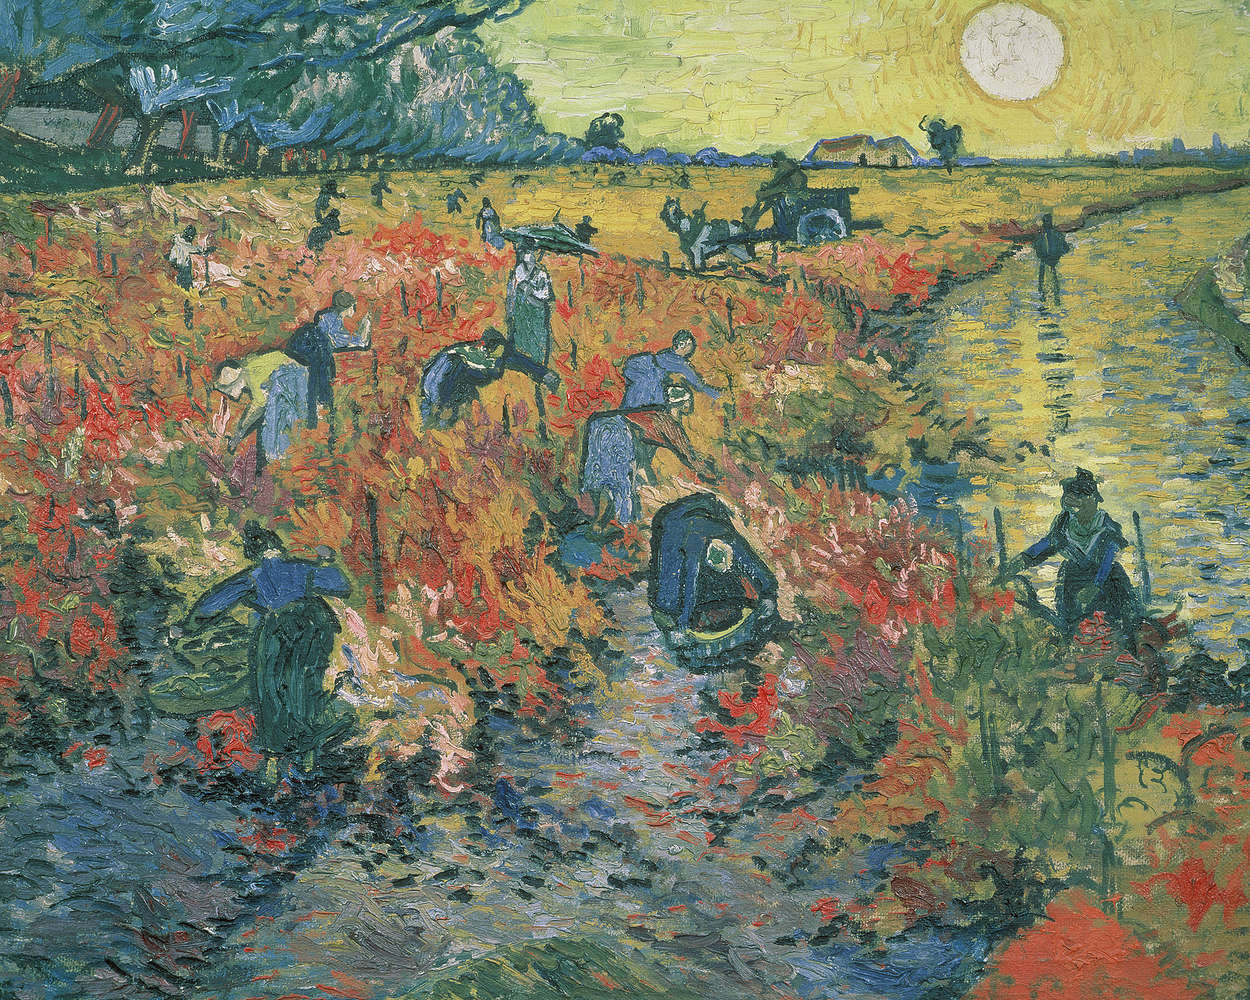             Mural "Viñedos rojos" de Vincent van Gogh
        